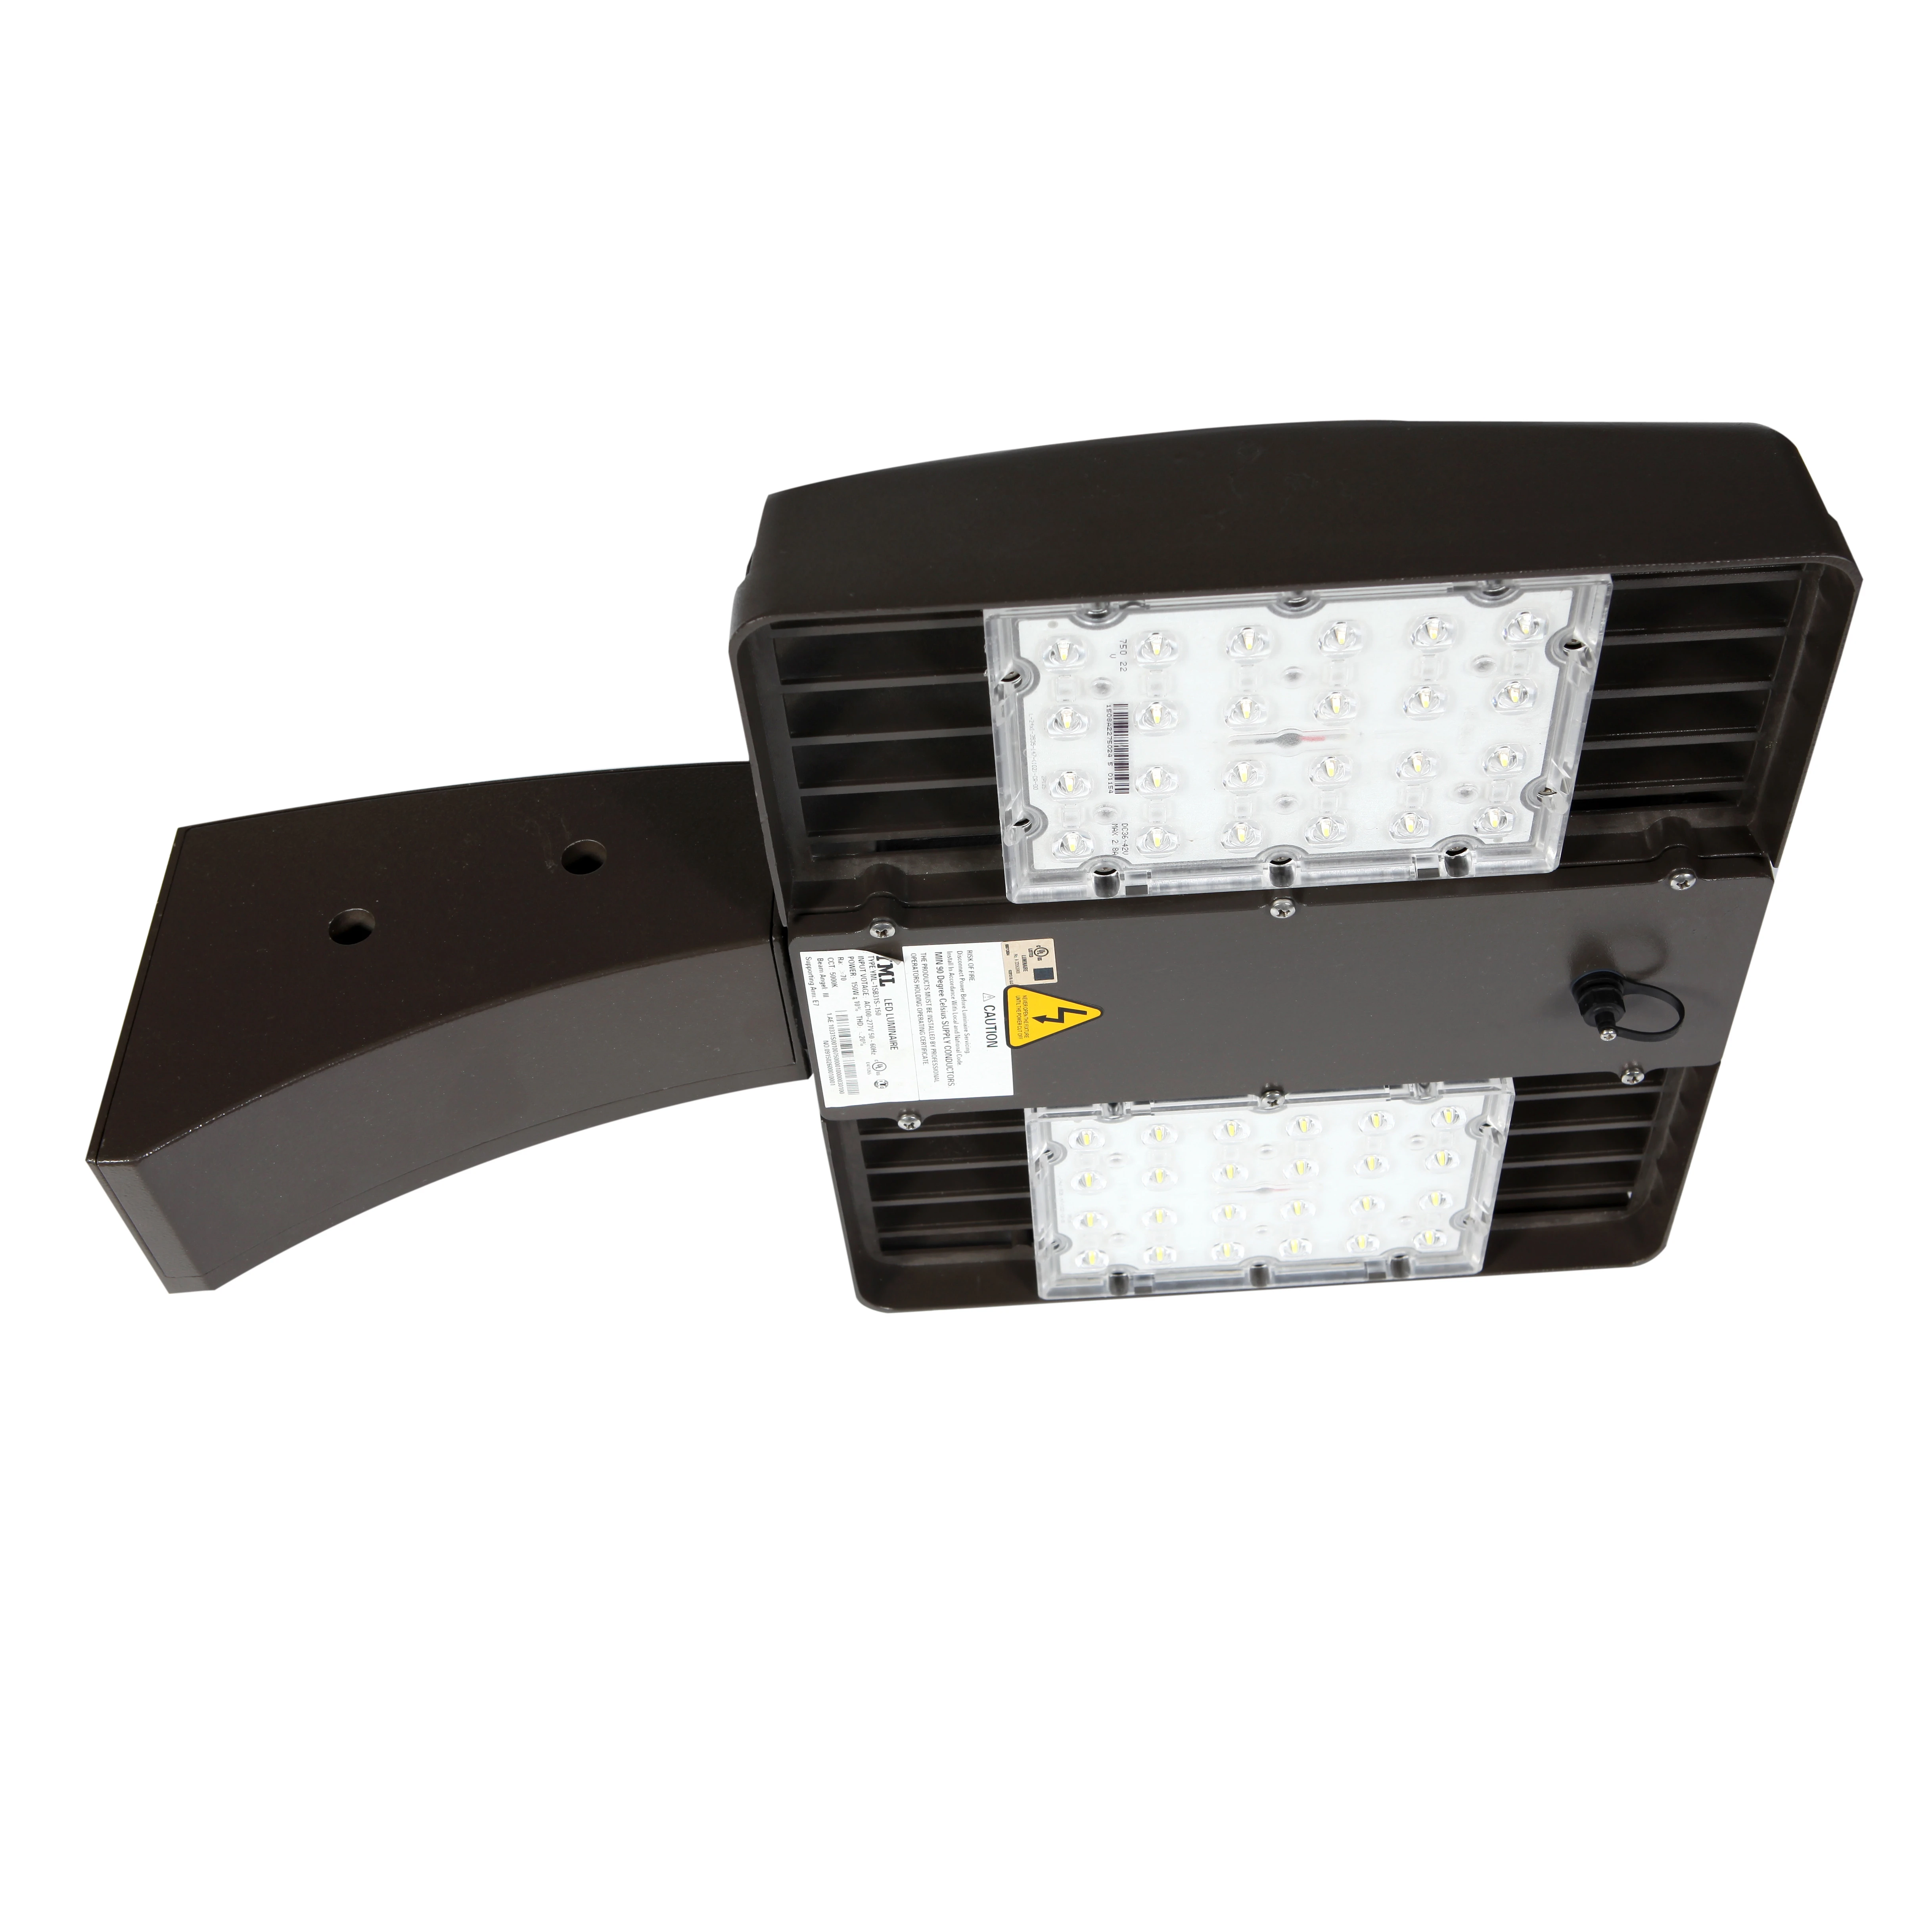 USA Market 100-277v Street luminaire shoe box retrofit kit lamp fixture 100w